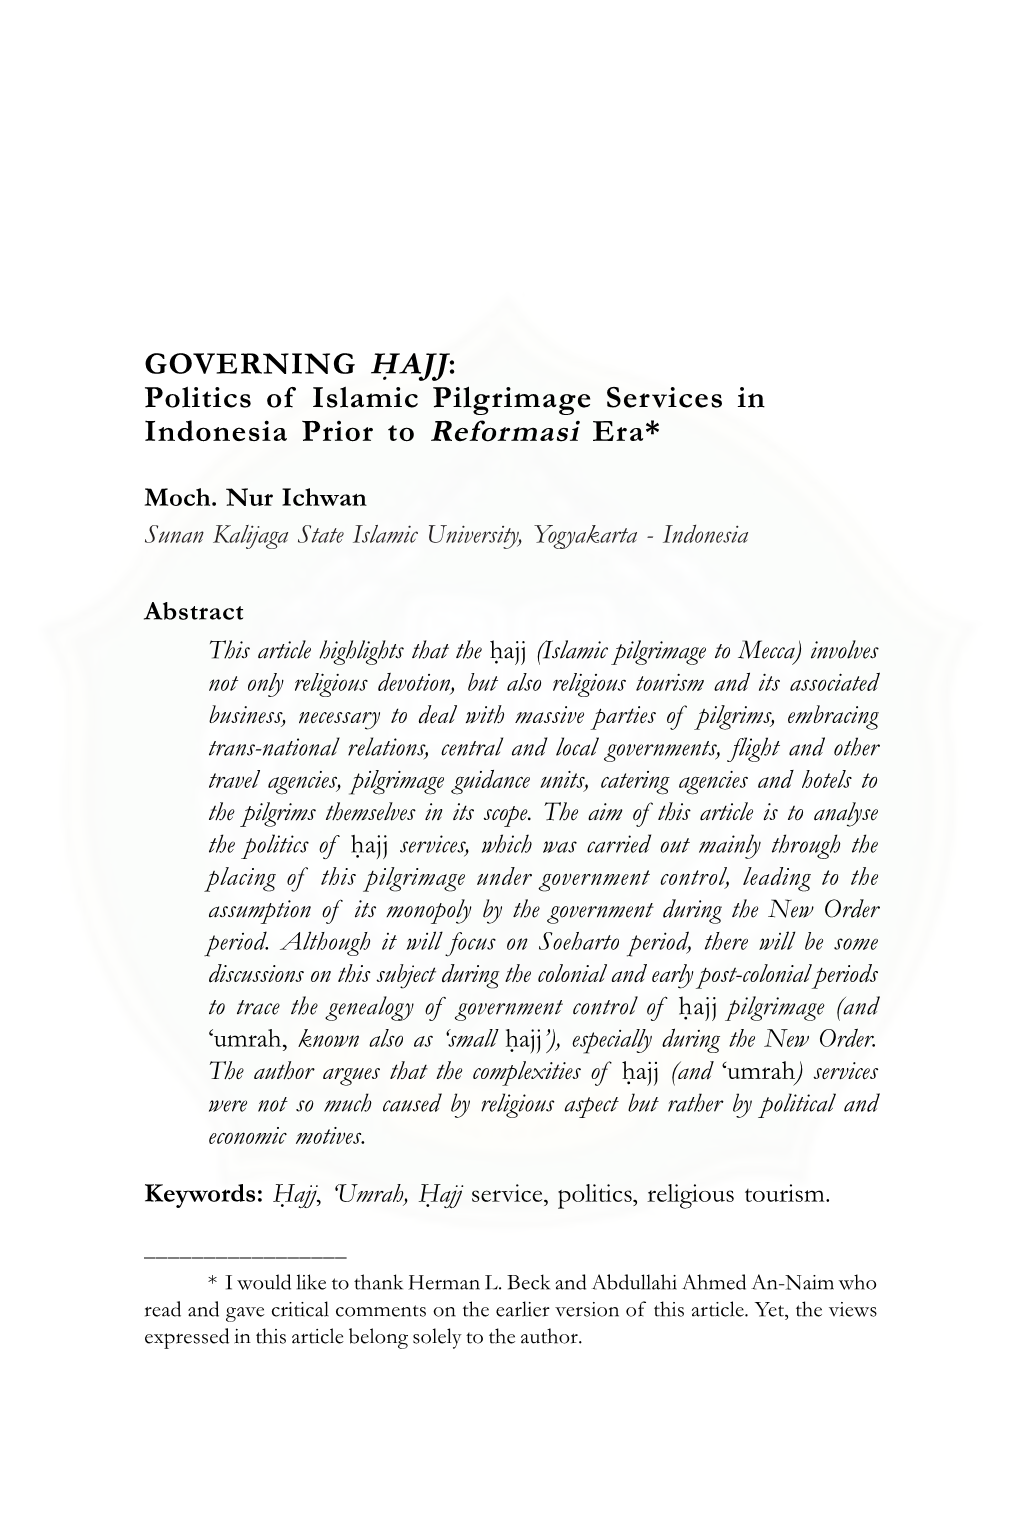 GOVERNING H{AJJ: Politics of Islamic Pilgrimage Services in Indonesia Prior to Reformasi Era*